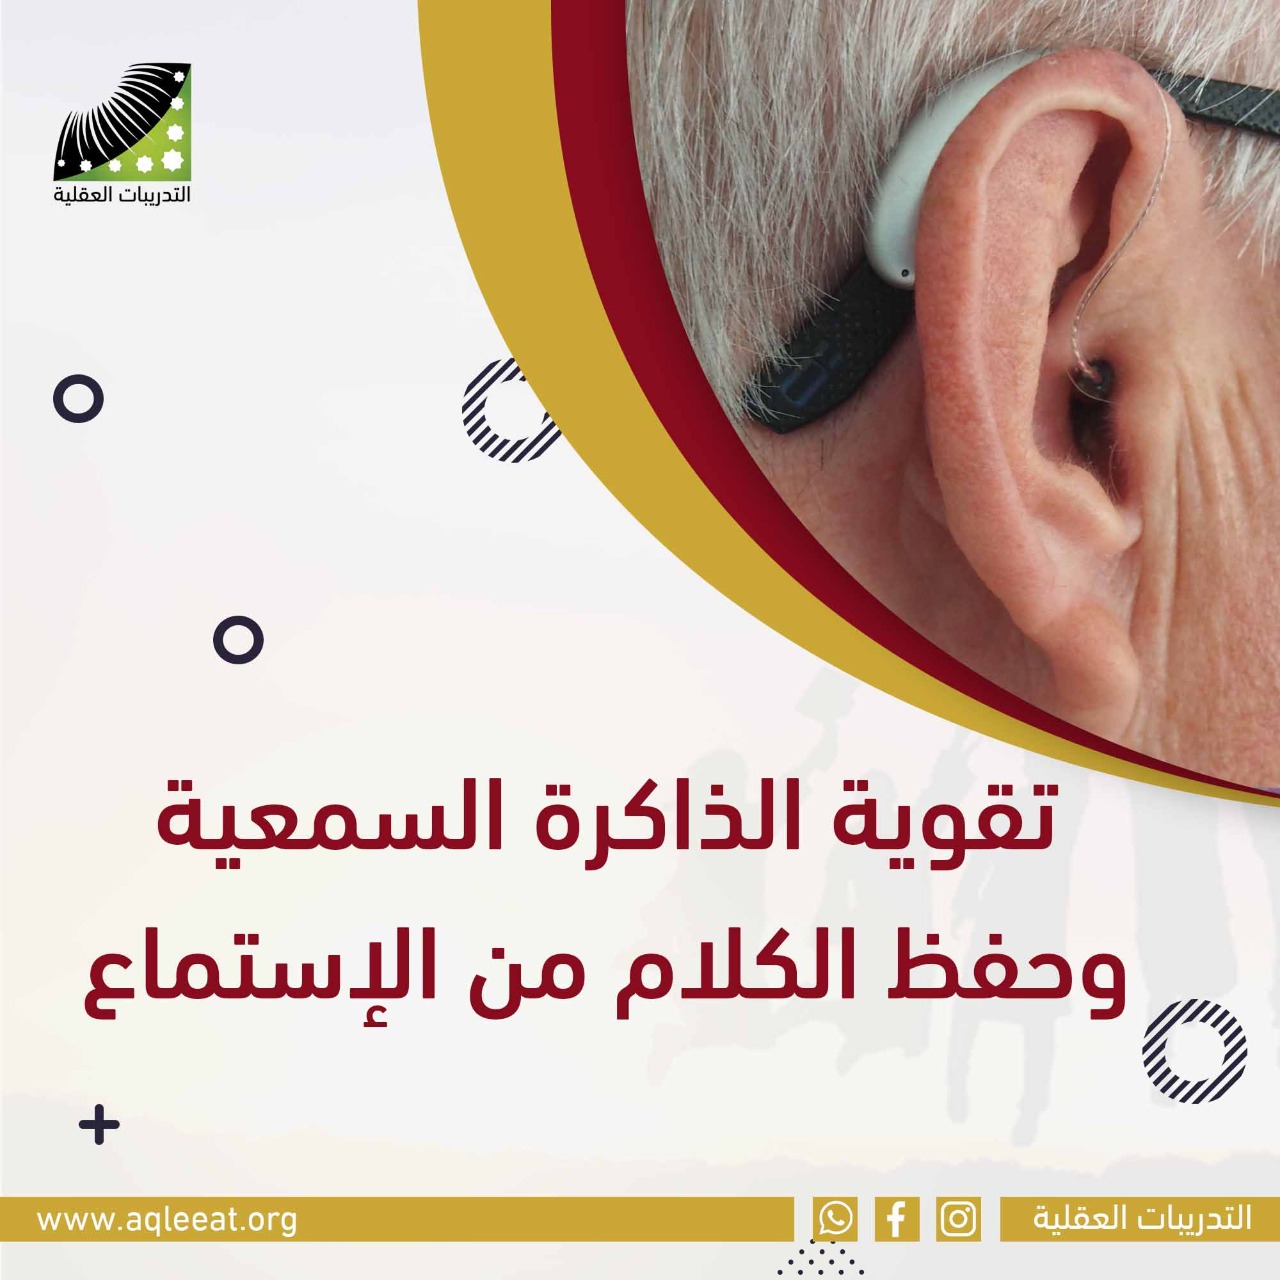 تقوية الذاكرة السمعية وحفظ الكلام من الاستماع